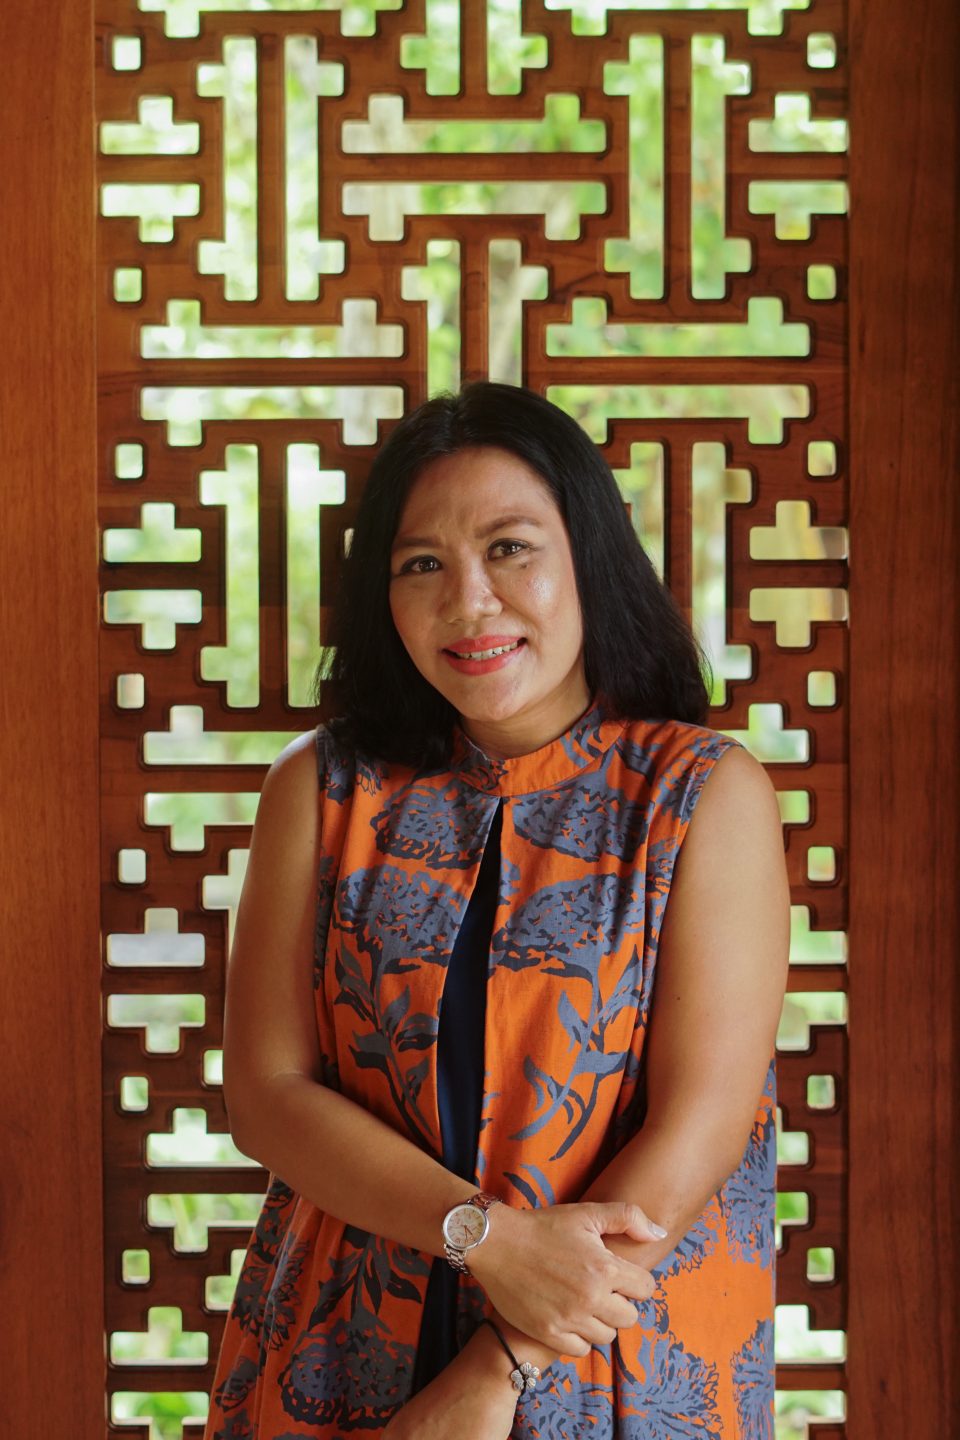 Dwi Kumalasari, Director of Sales and Marketing at Andaz Bali